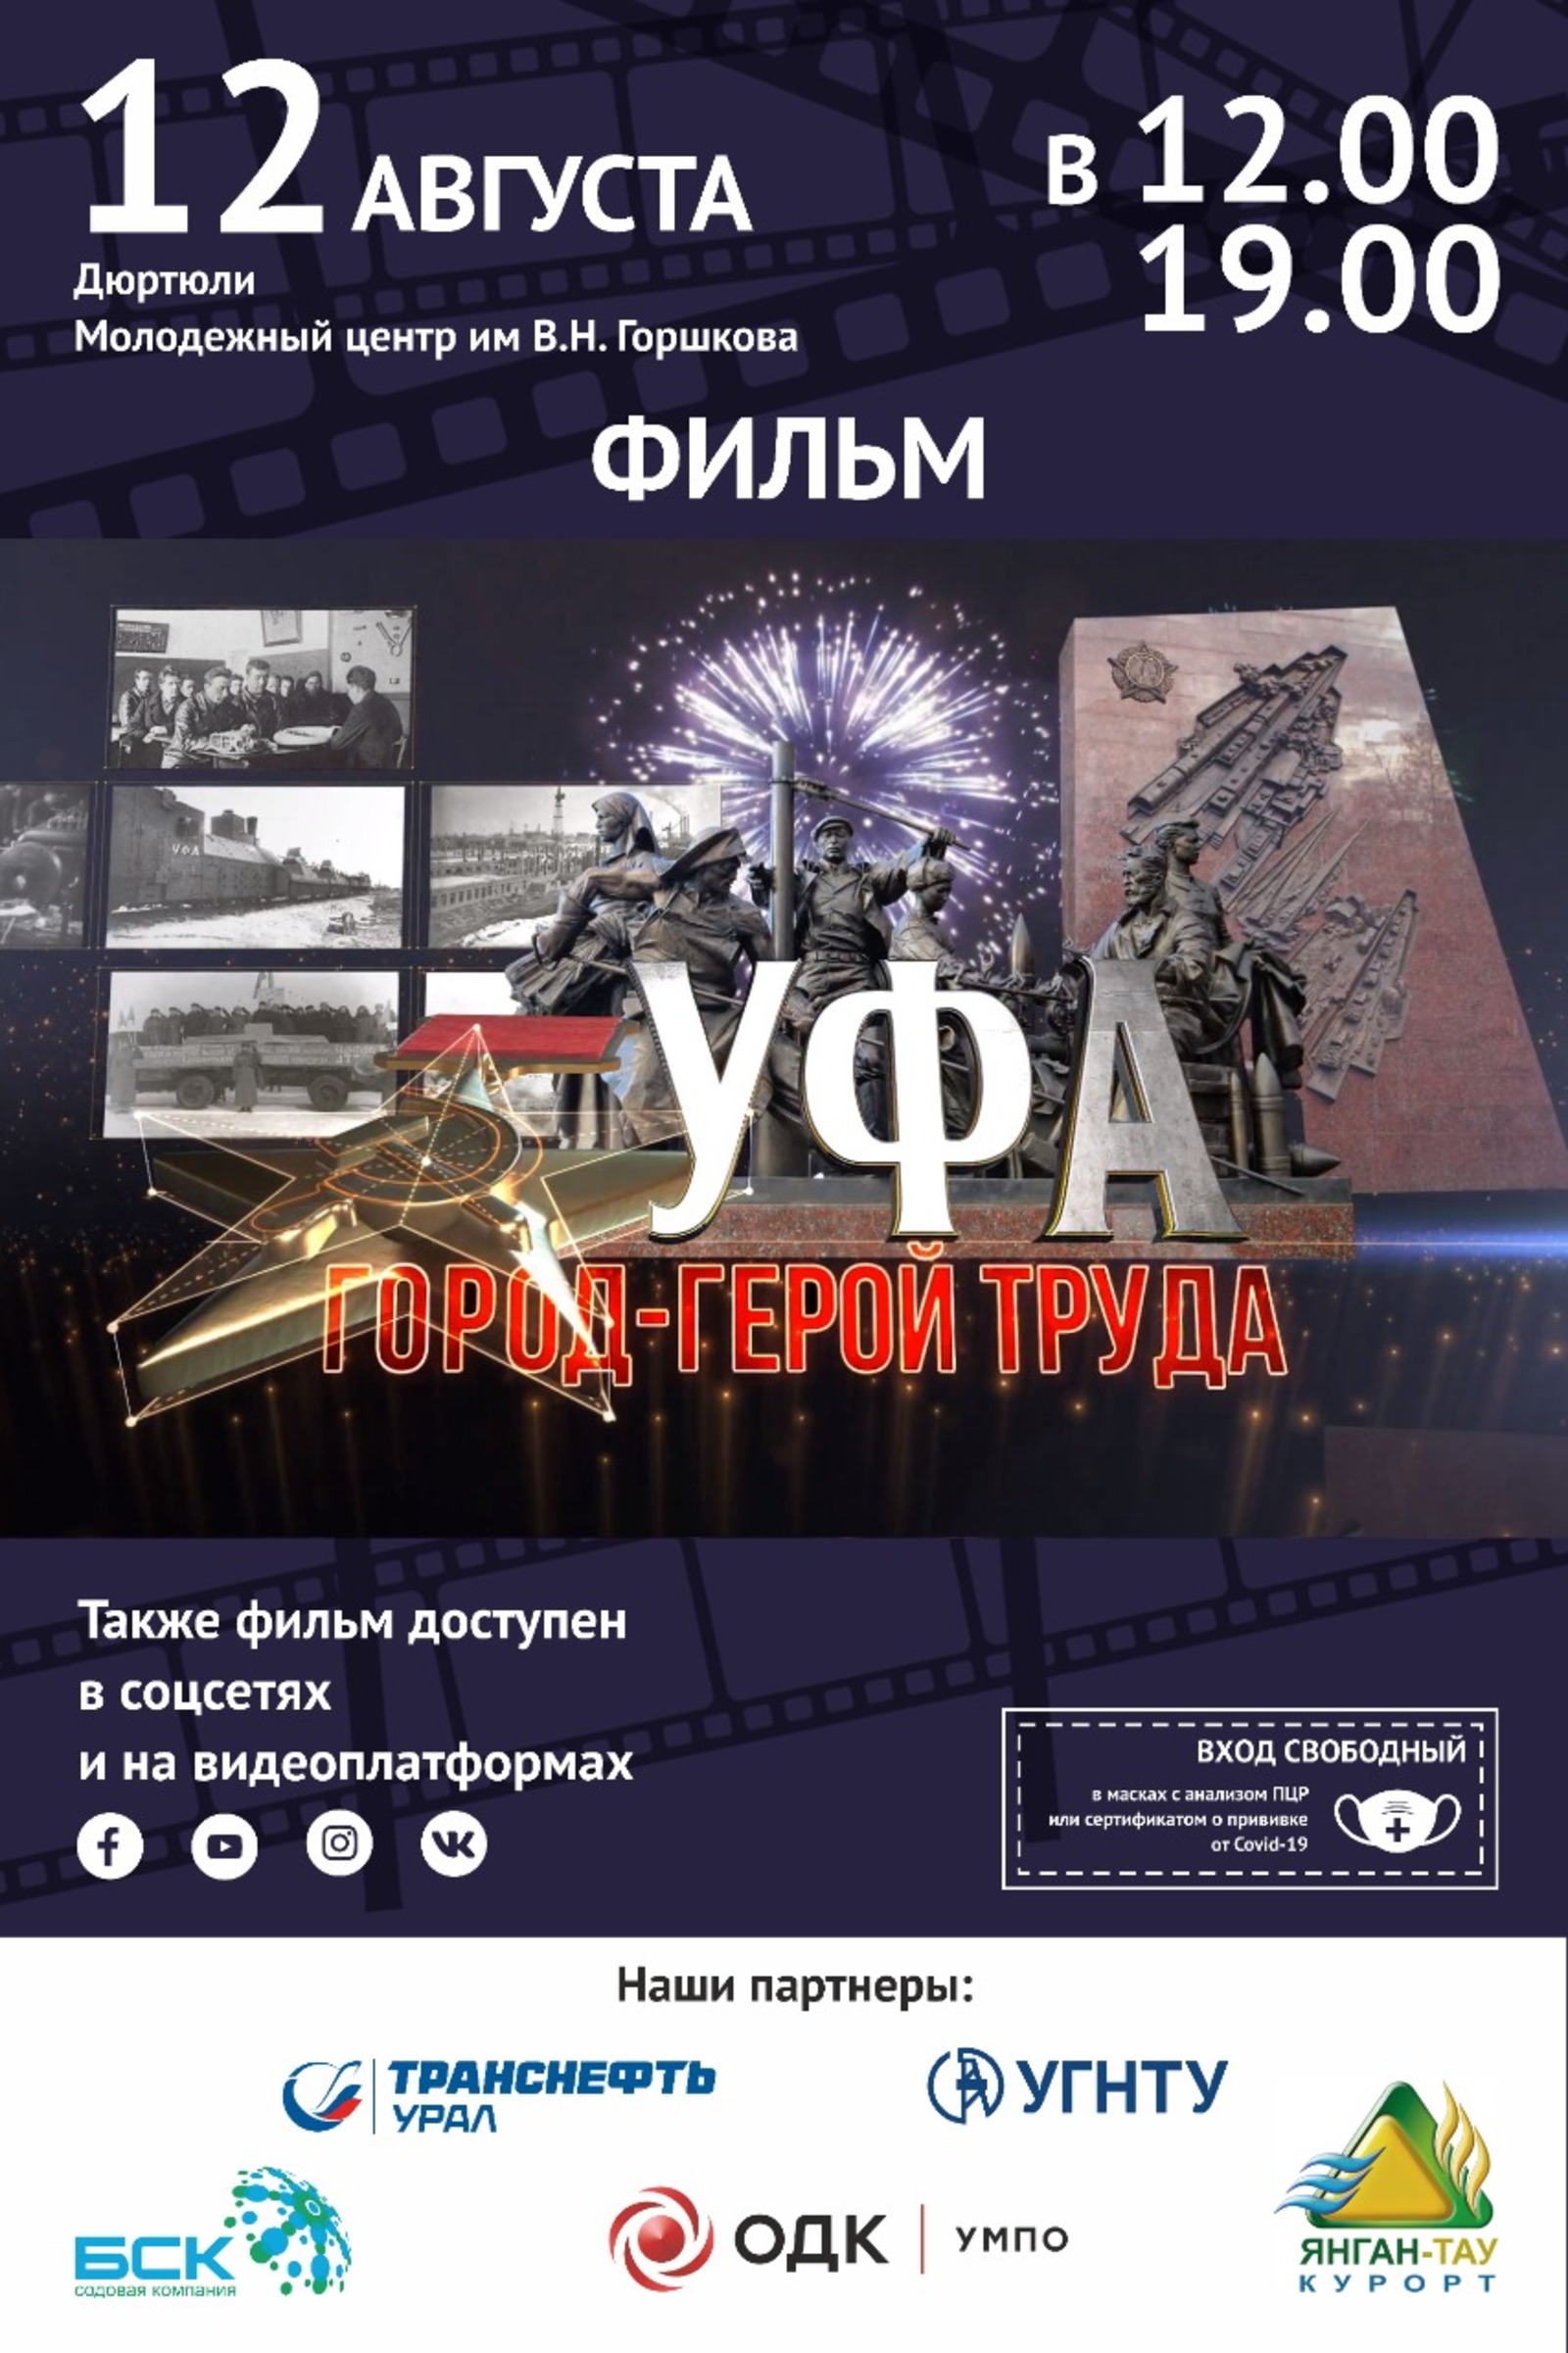 12 августа в Молодежном центре им. В. Горшкова будет показ фильма "Уфа – город-герой труда"